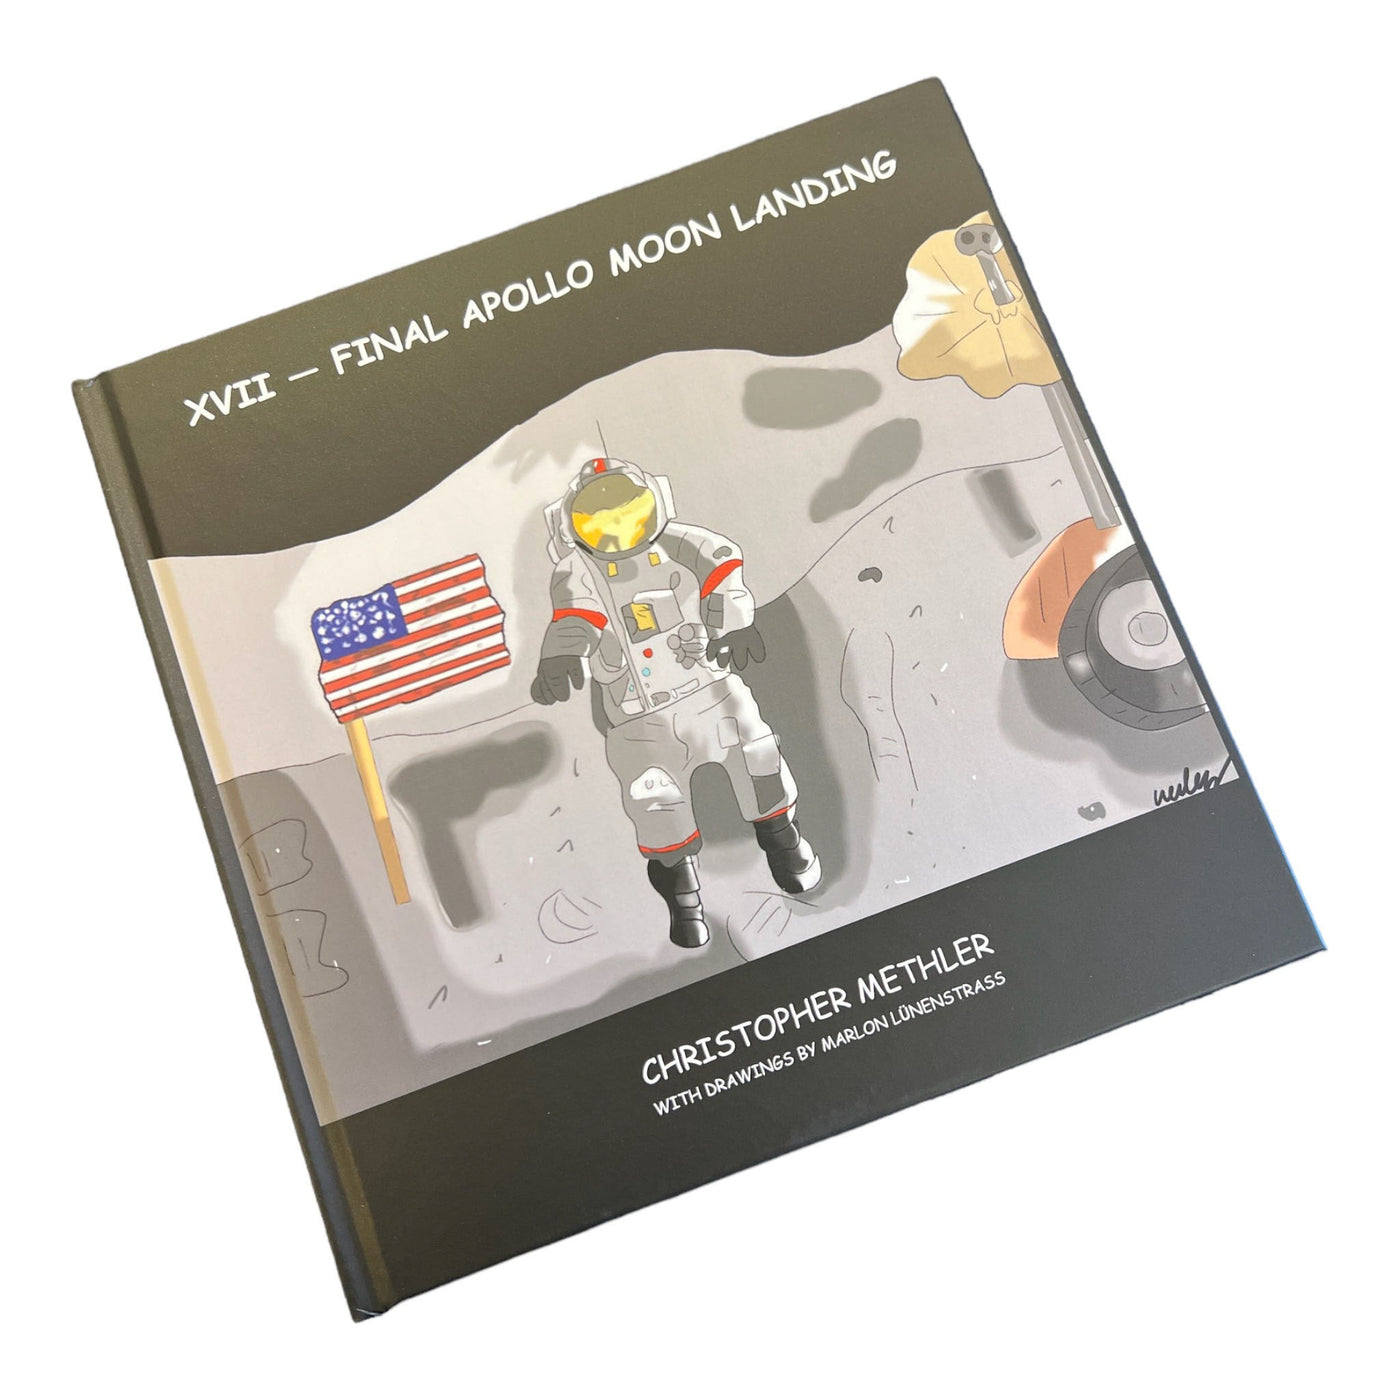 Apollo 17 – children's book about final Apollo Moon Landing - Manga Style!